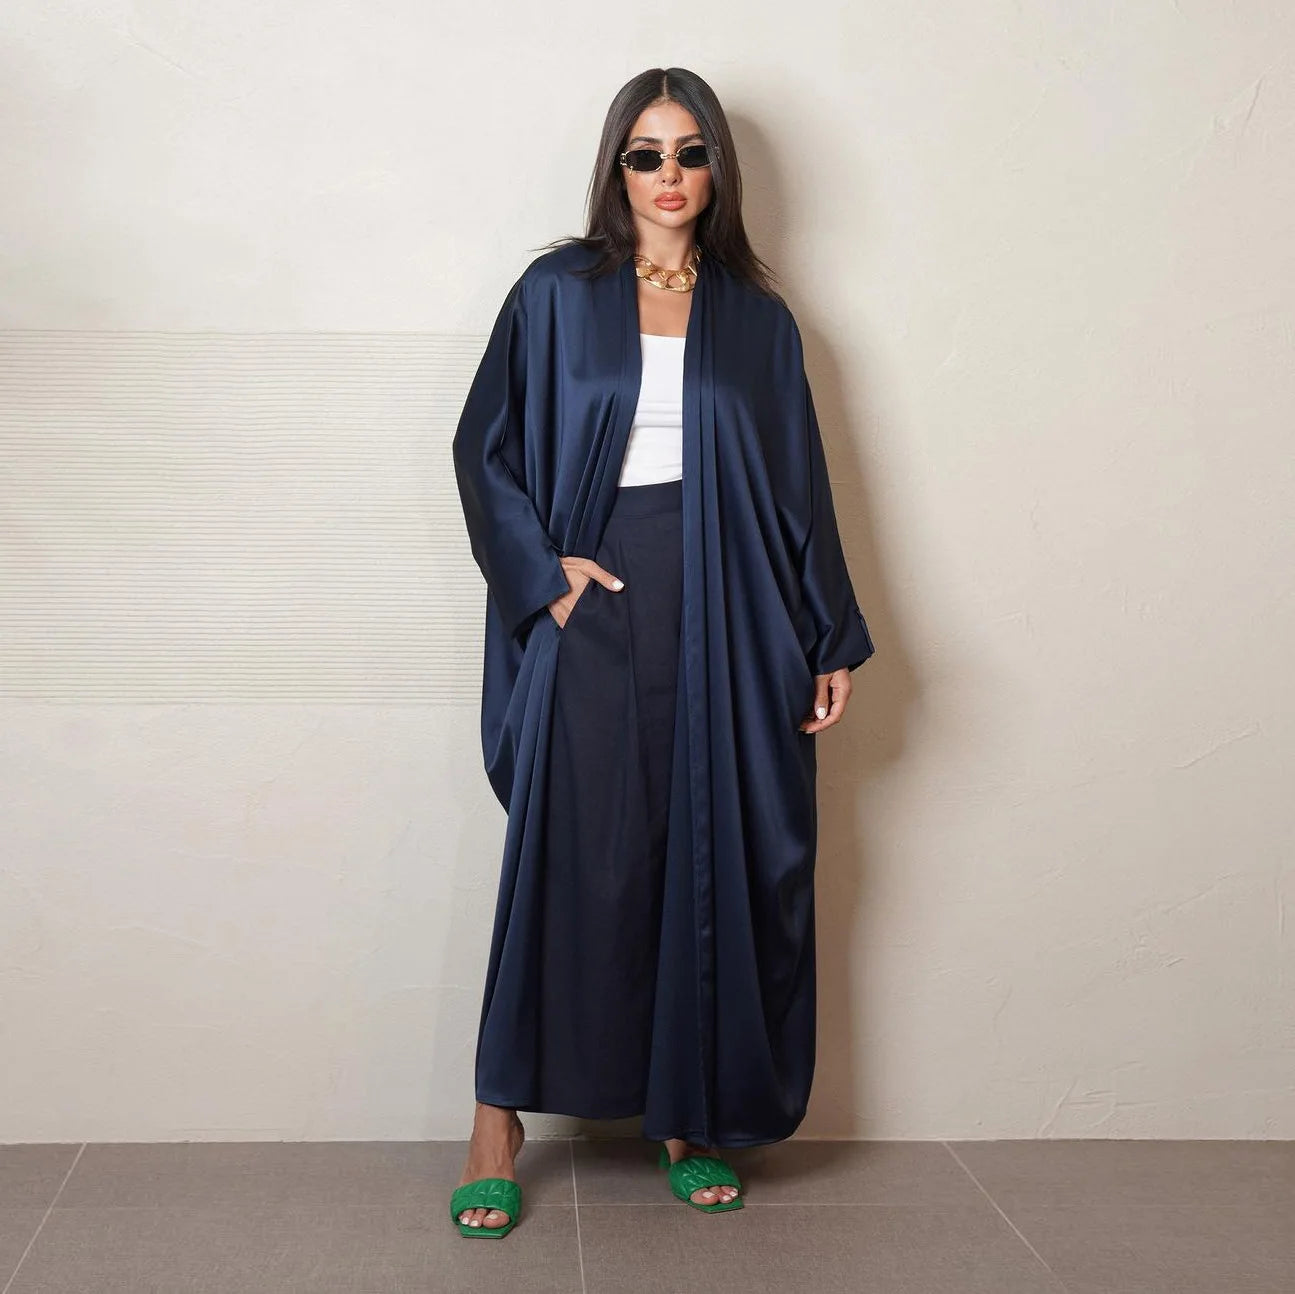 Satin Abaya Dress: Modern Muslim Fashion Statement